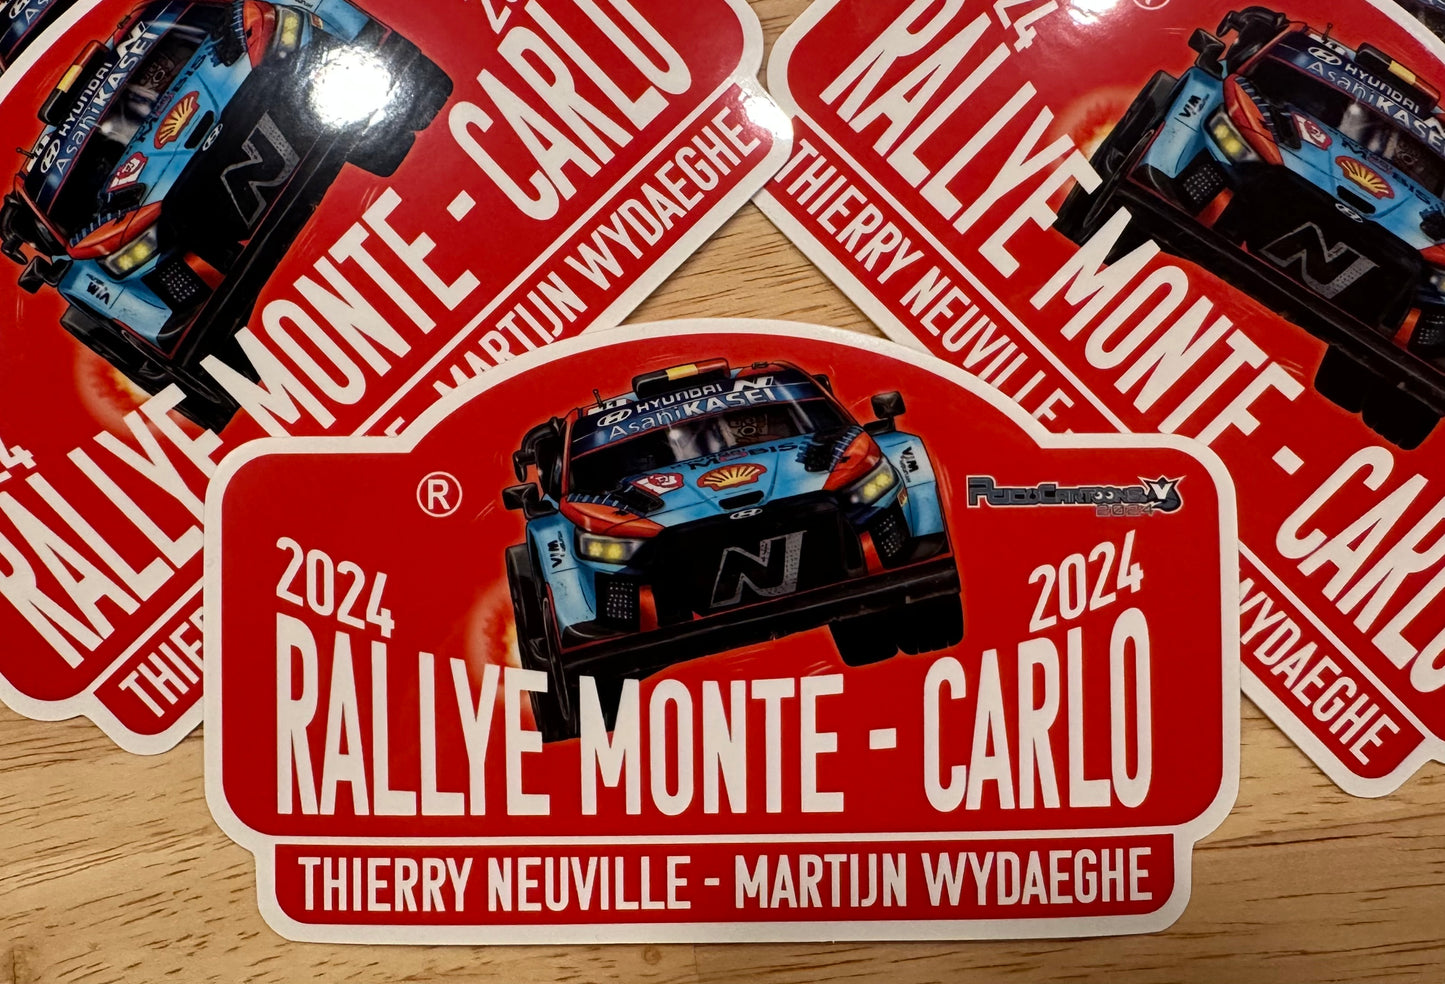 THIERRY NEUVILLE - MARTIJN WYDAEGHE - Monte 2024 Stickers